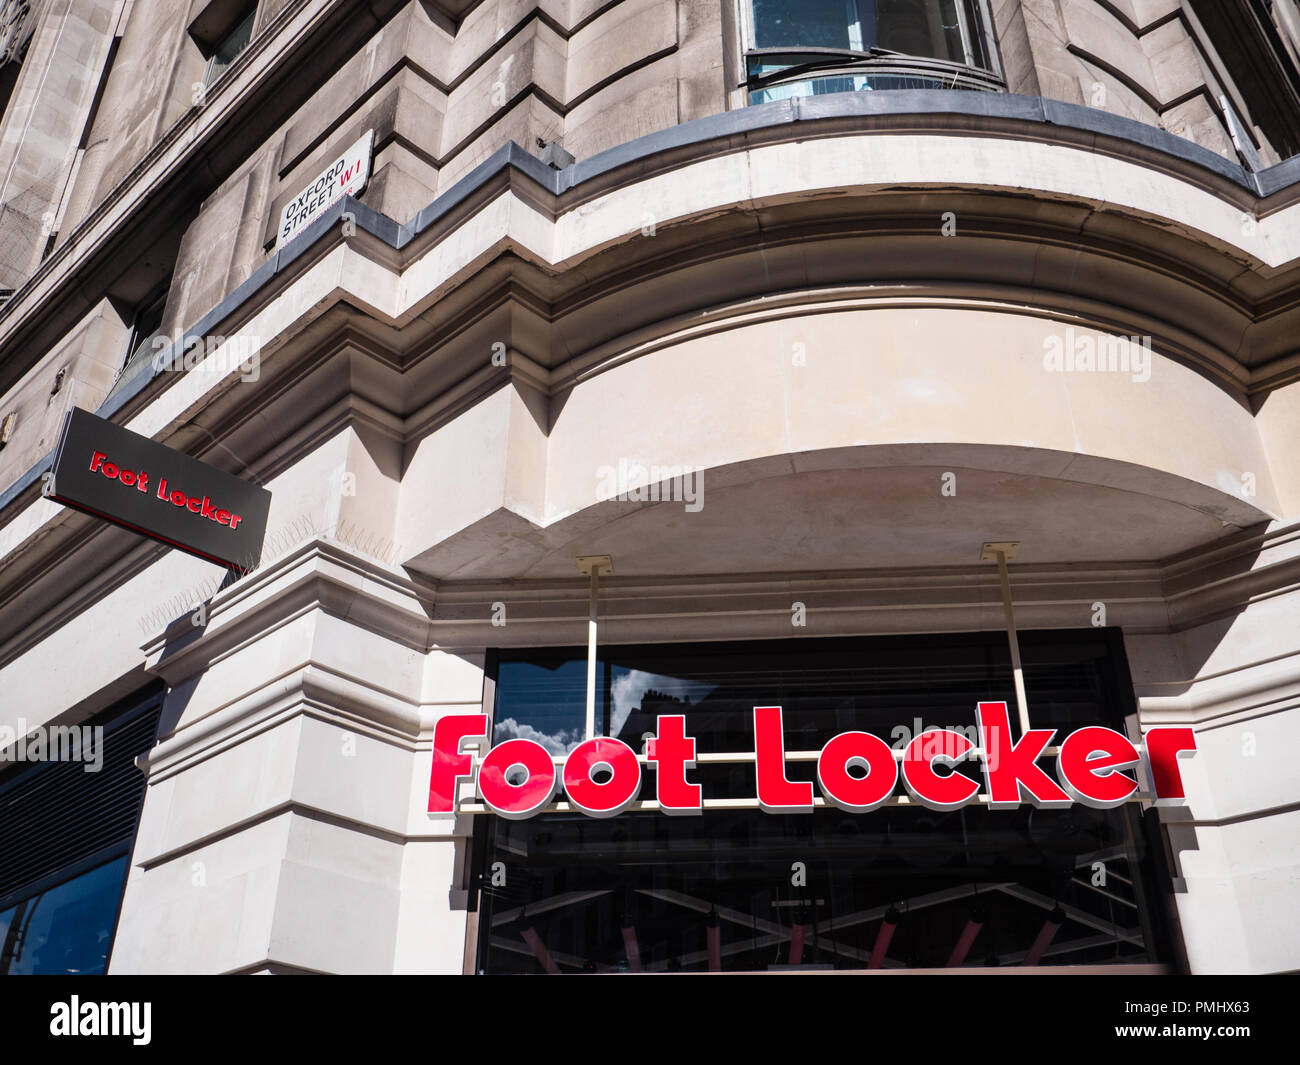 Foot locker logo Banque de photographies et d'images à haute résolution -  Alamy